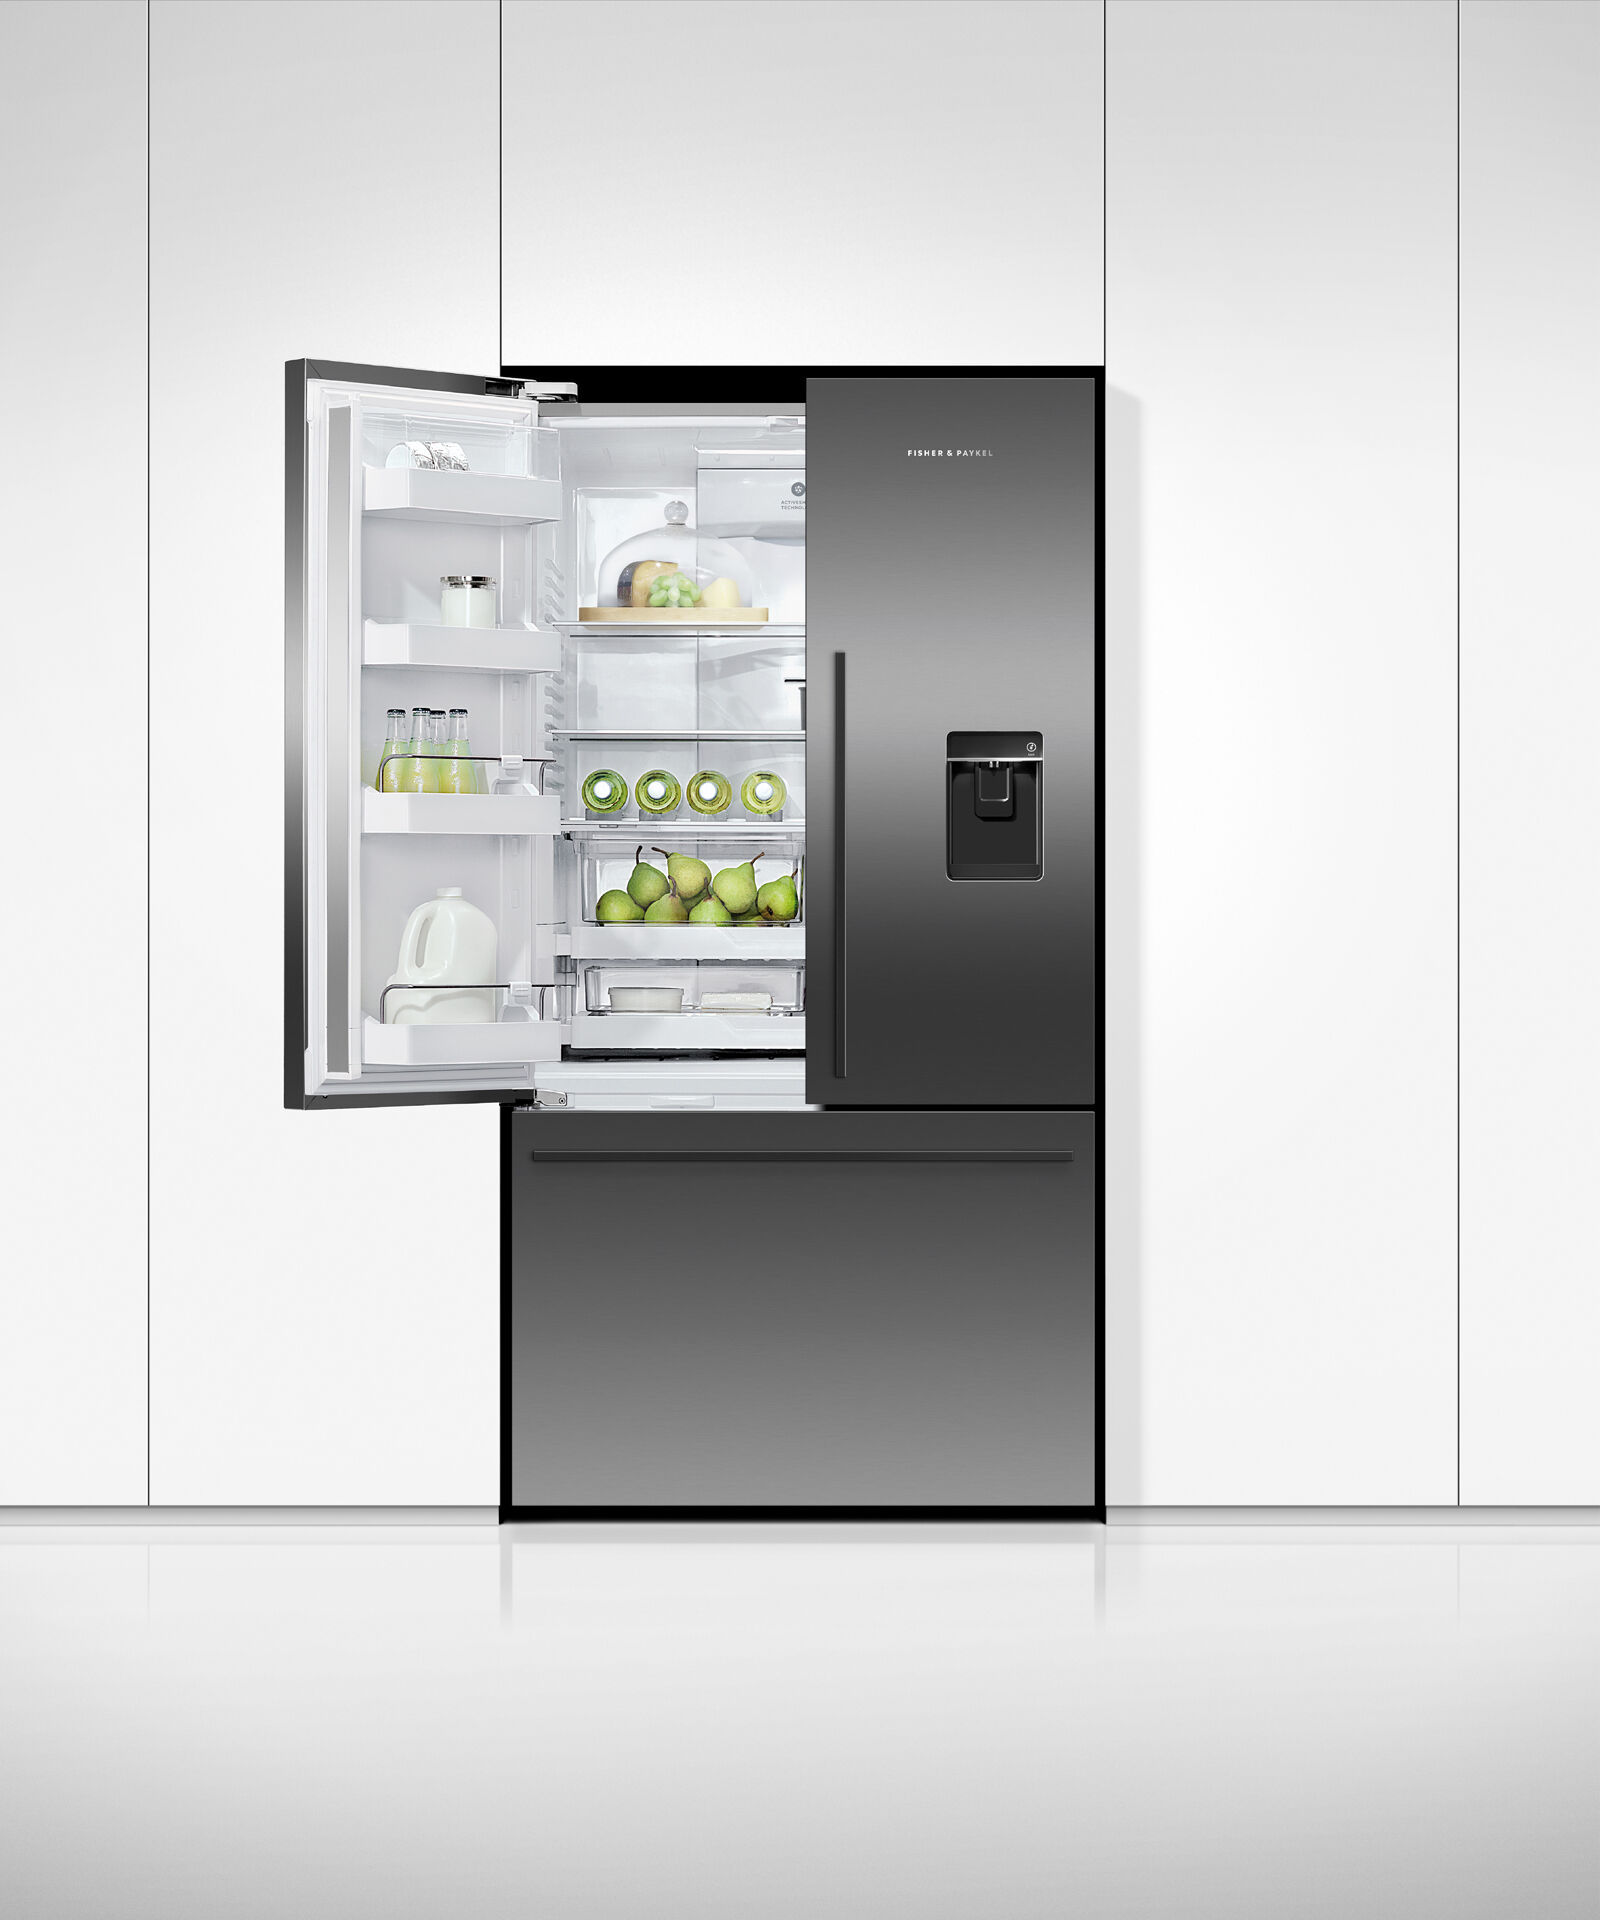 黑色法式對開門雪櫃, 90cm, 自動製冰和冰水, gallery image 5.0